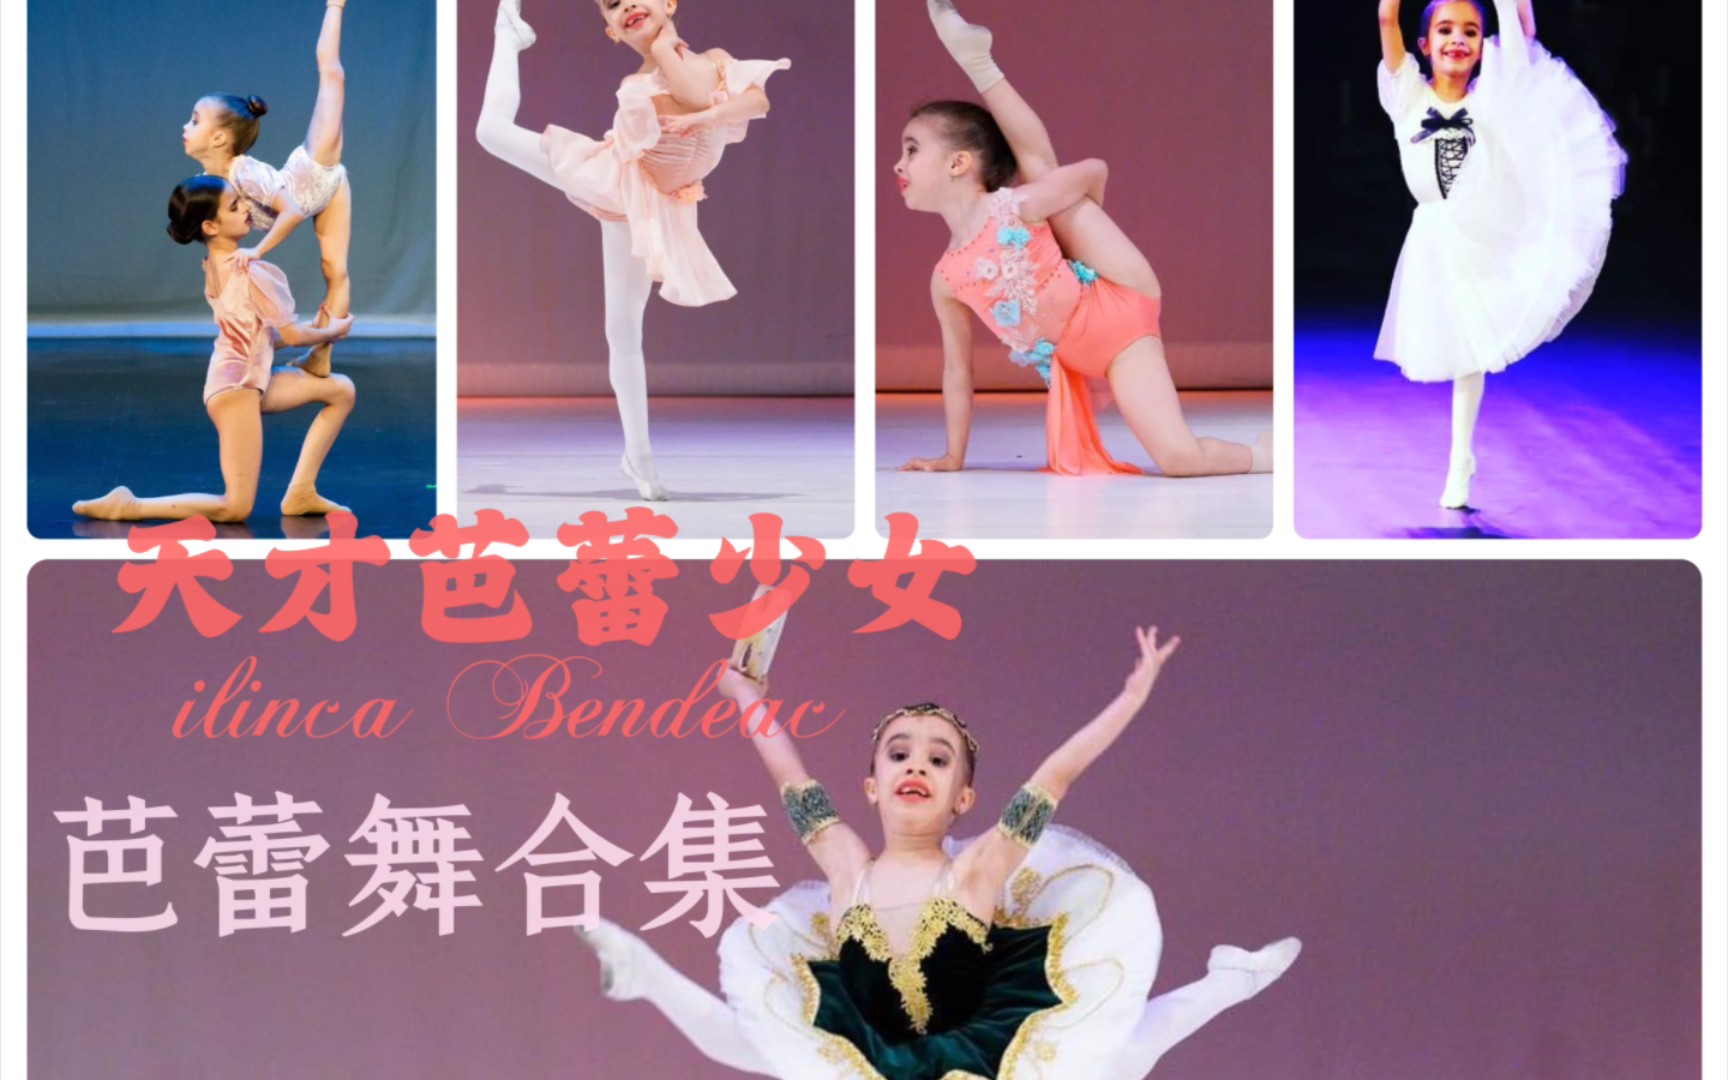 【芭蕾】天赋极强的芭蕾小萝莉ilinca Bendeac芭蕾舞合集